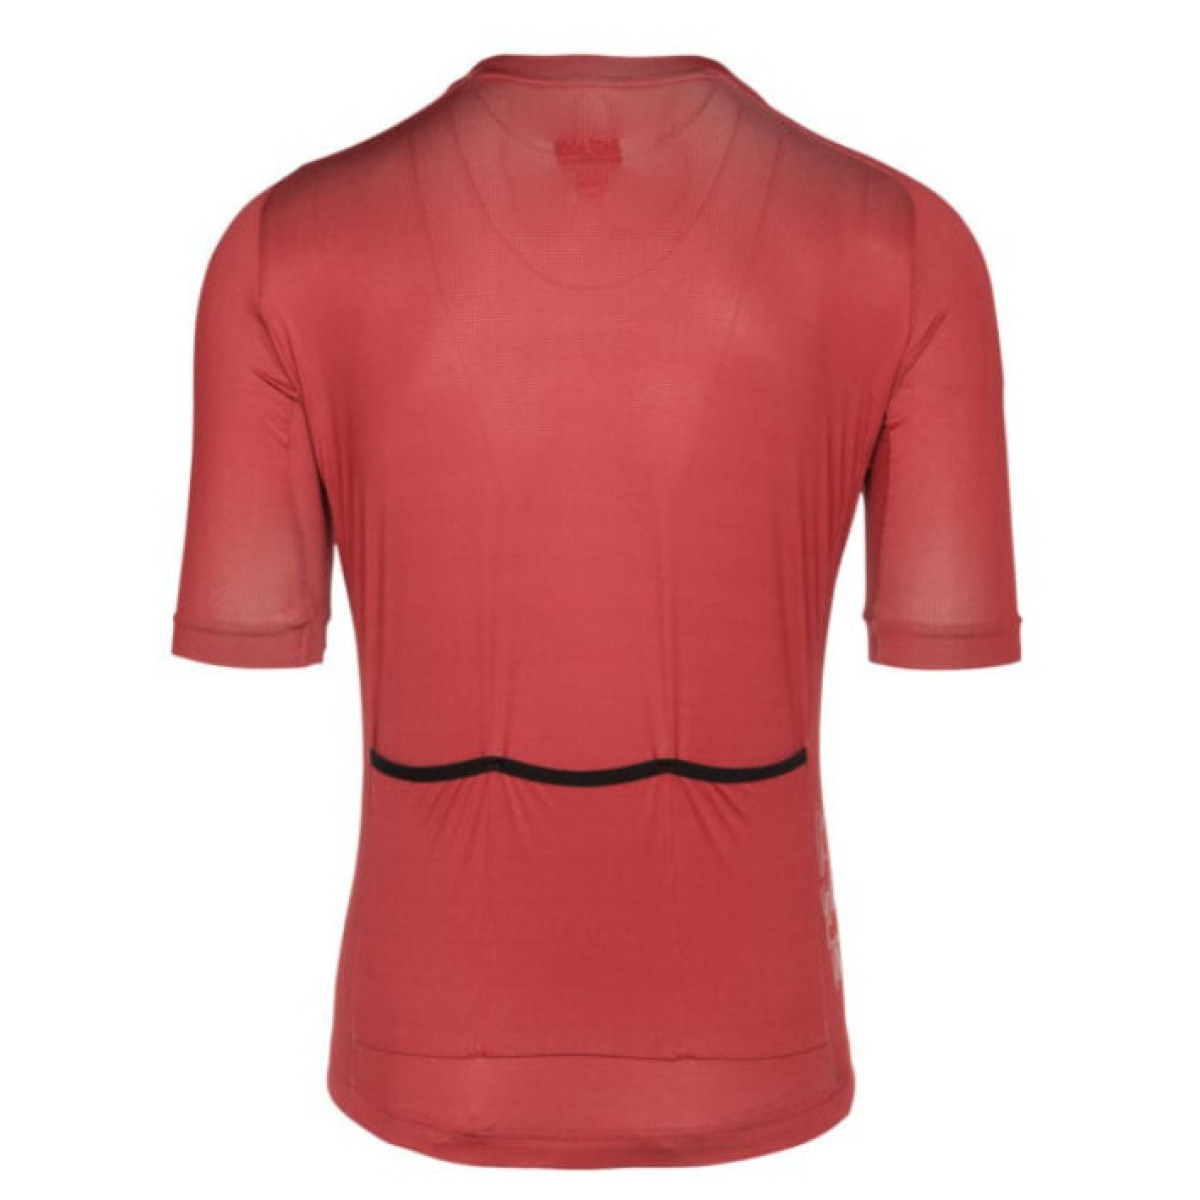 Bioracer Metalix vyriški marškinėliai / Red